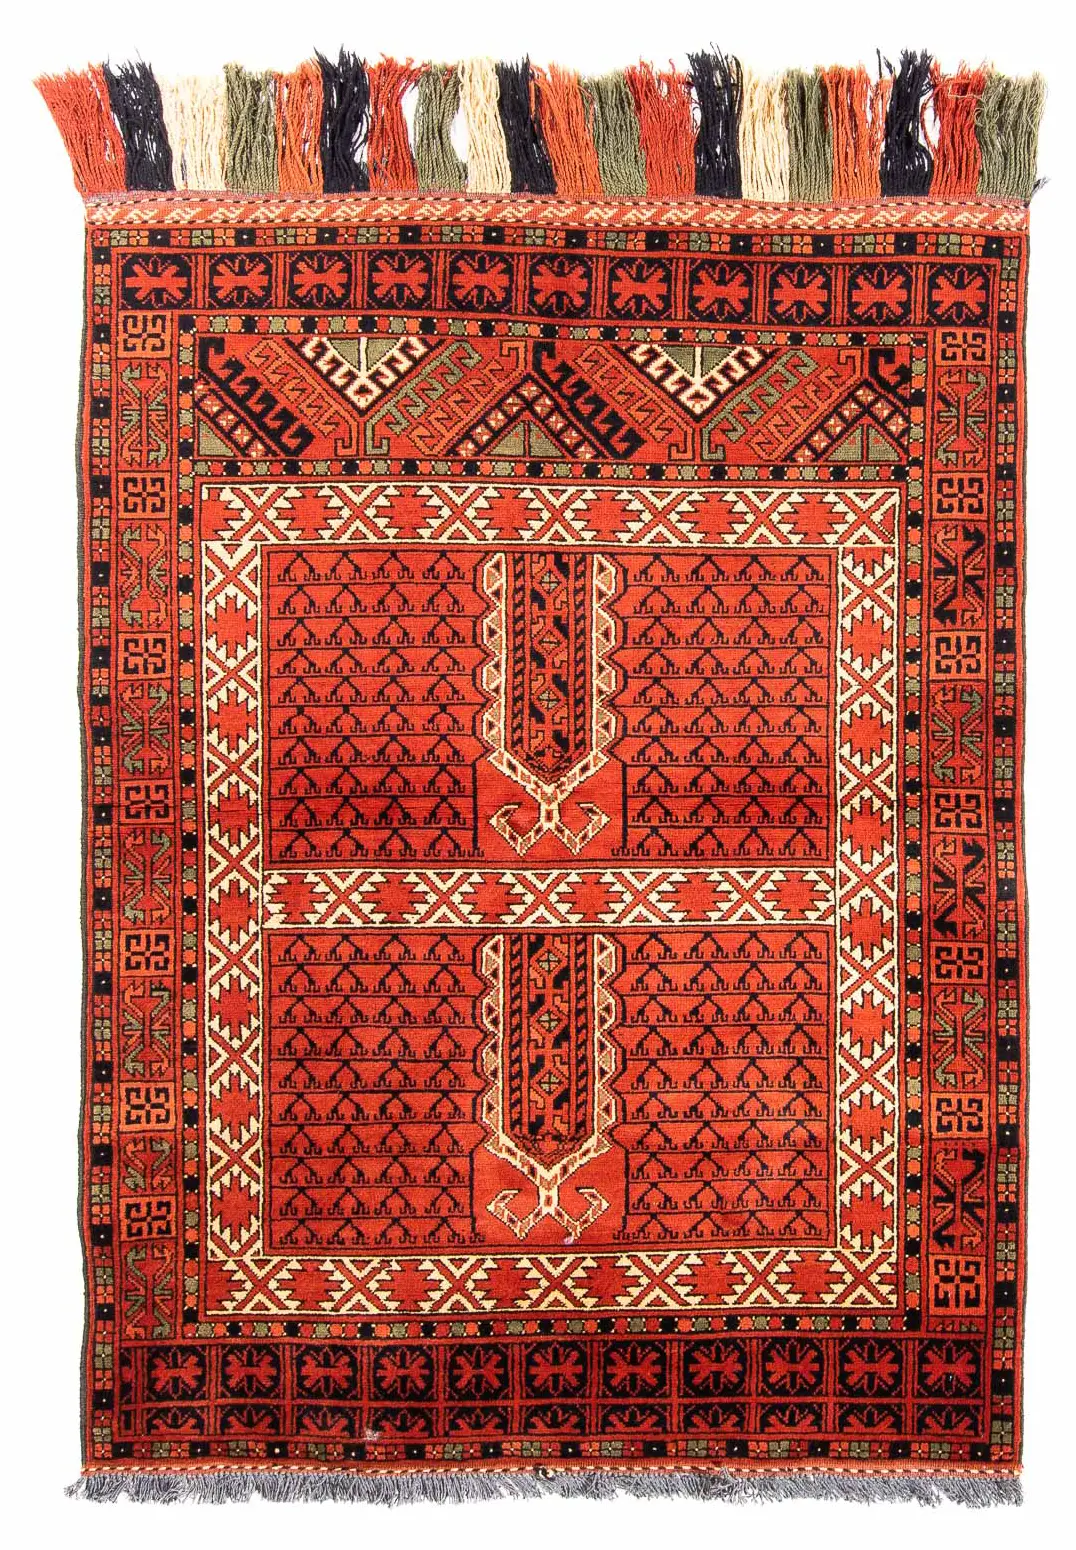 Afghan Teppich - 174 x 118 cm - rost